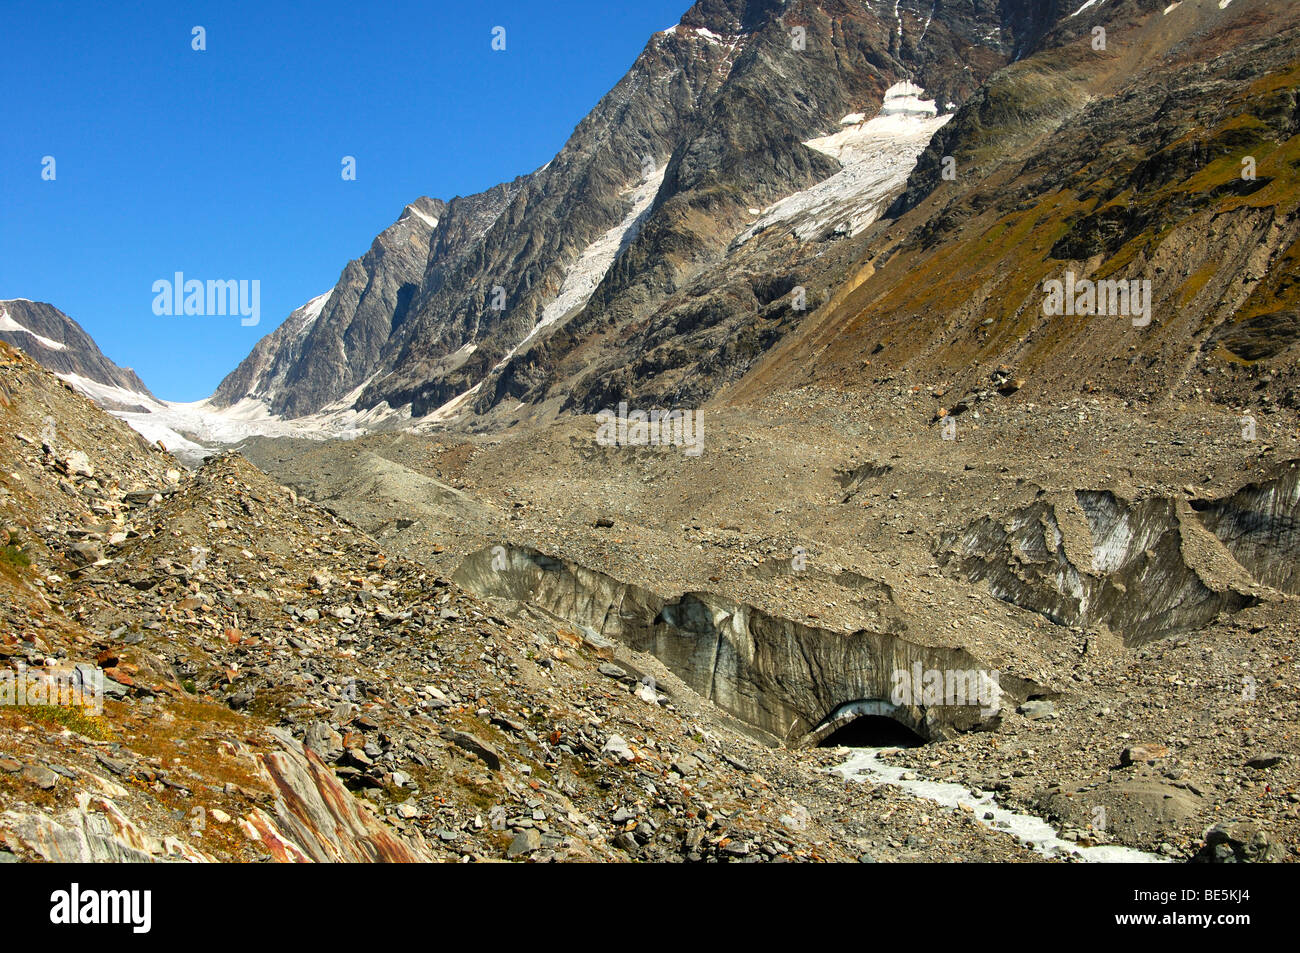 Rocce e detriti in corrispondenza della fine del fronte di ghiaccio del ghiacciaio Langgletscher, Loetschental, Vallese, Svizzera Foto Stock